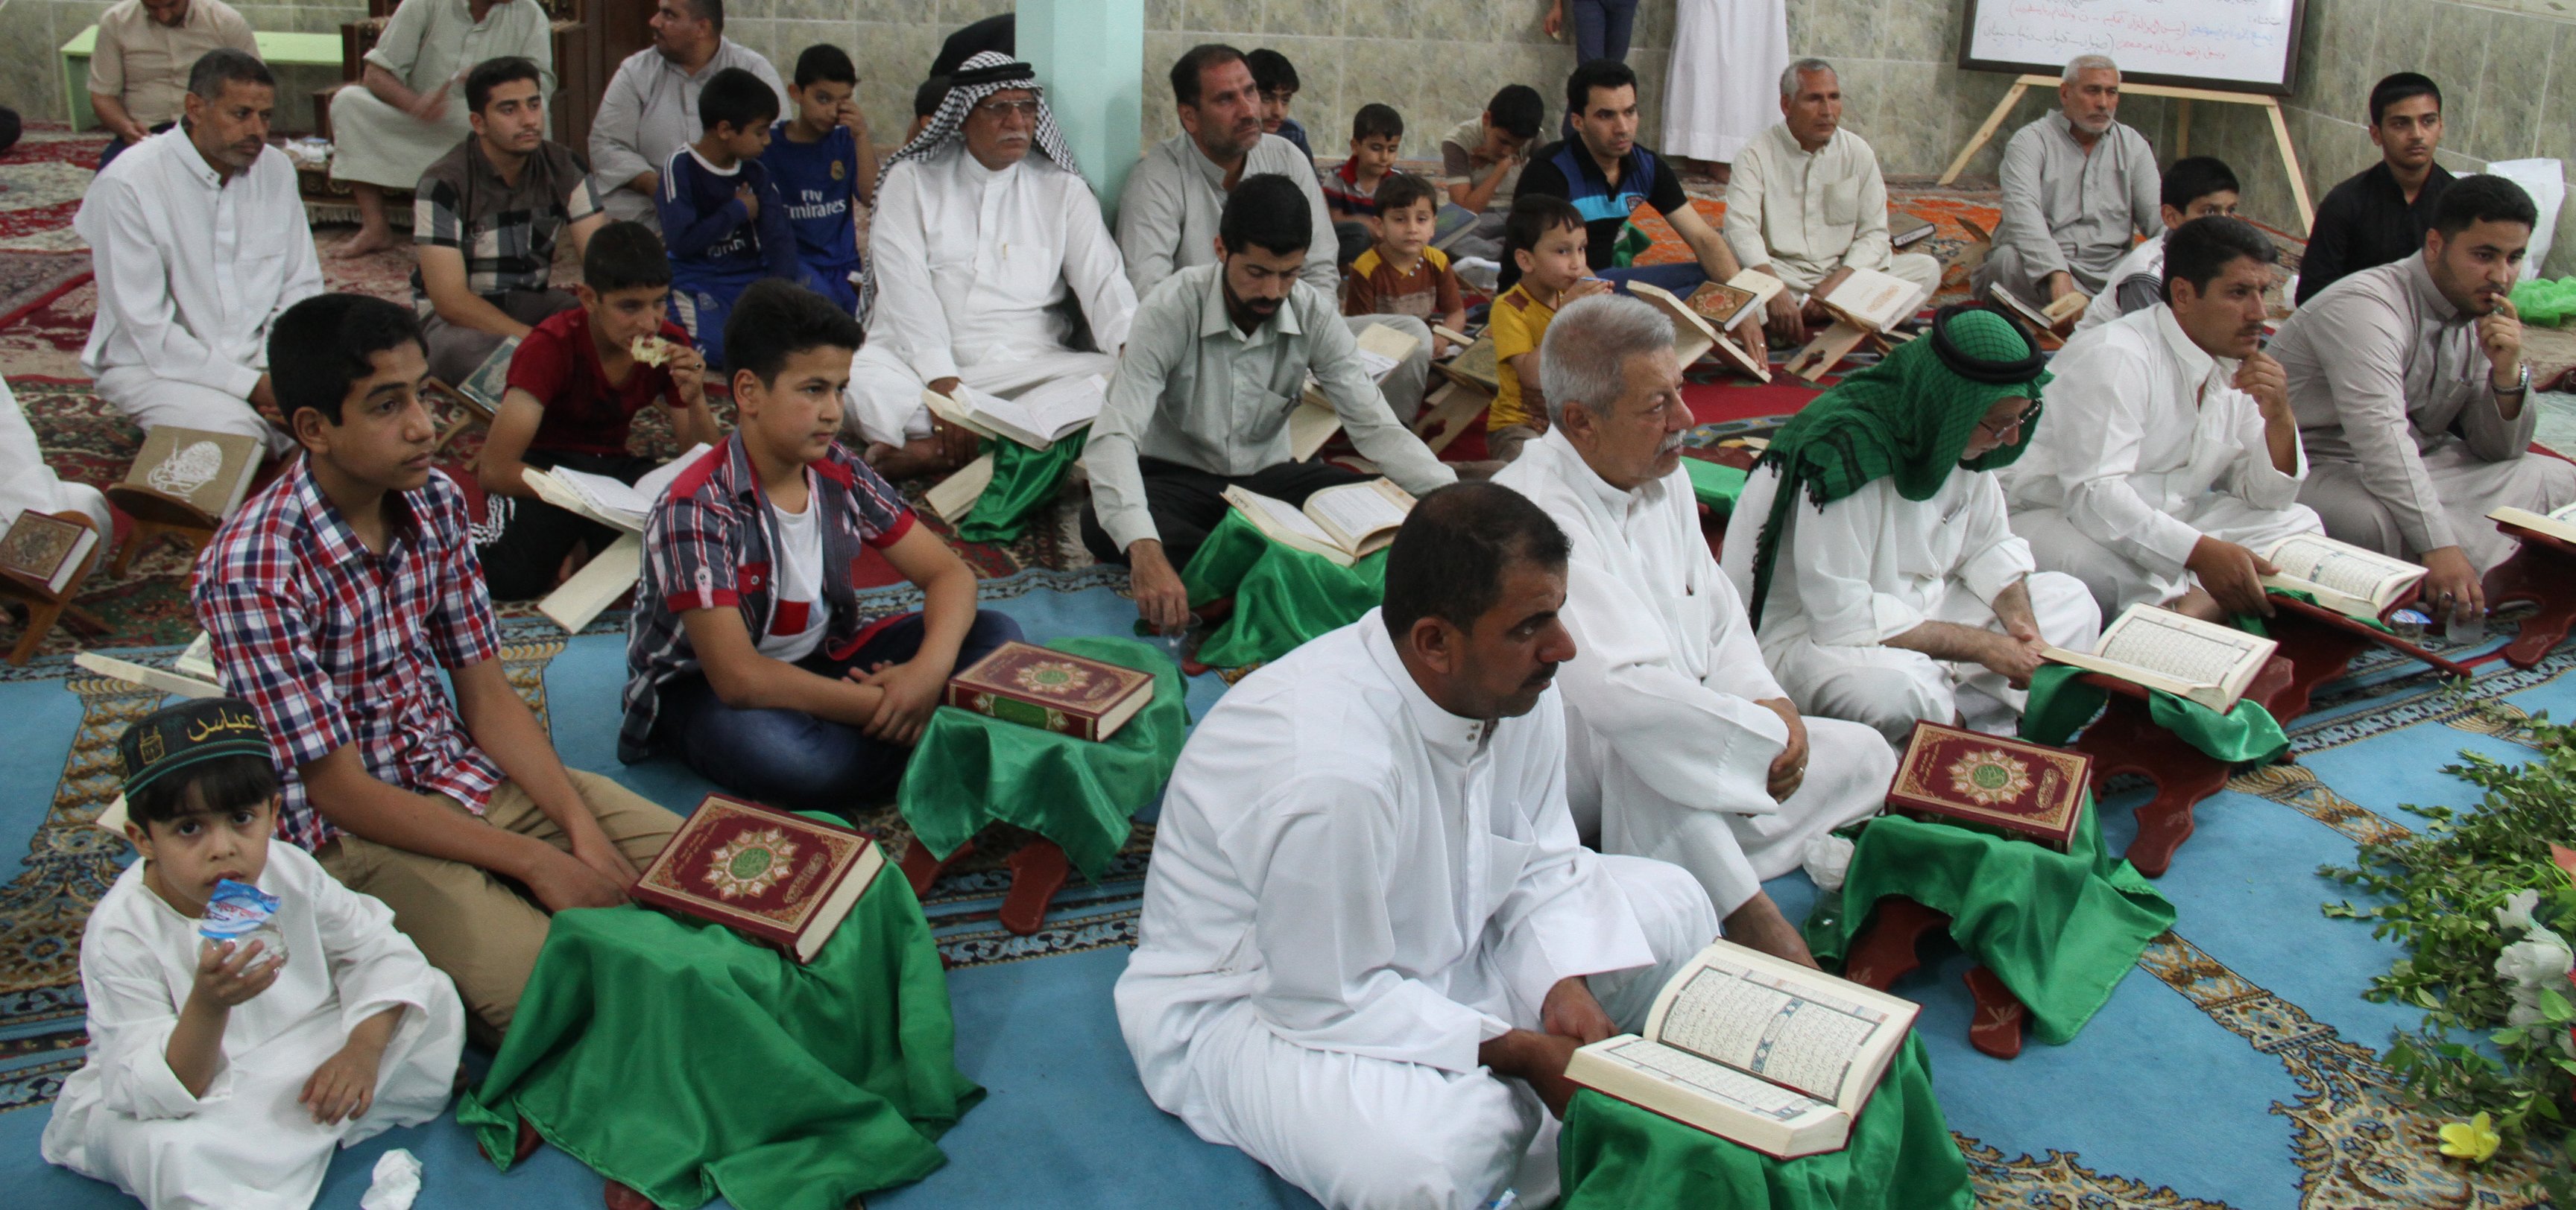 اقام معهد القرآن الكريم محفلاً قرآنياً مباركاً في حسينية فاطمة الزهراء(عليها السلام)